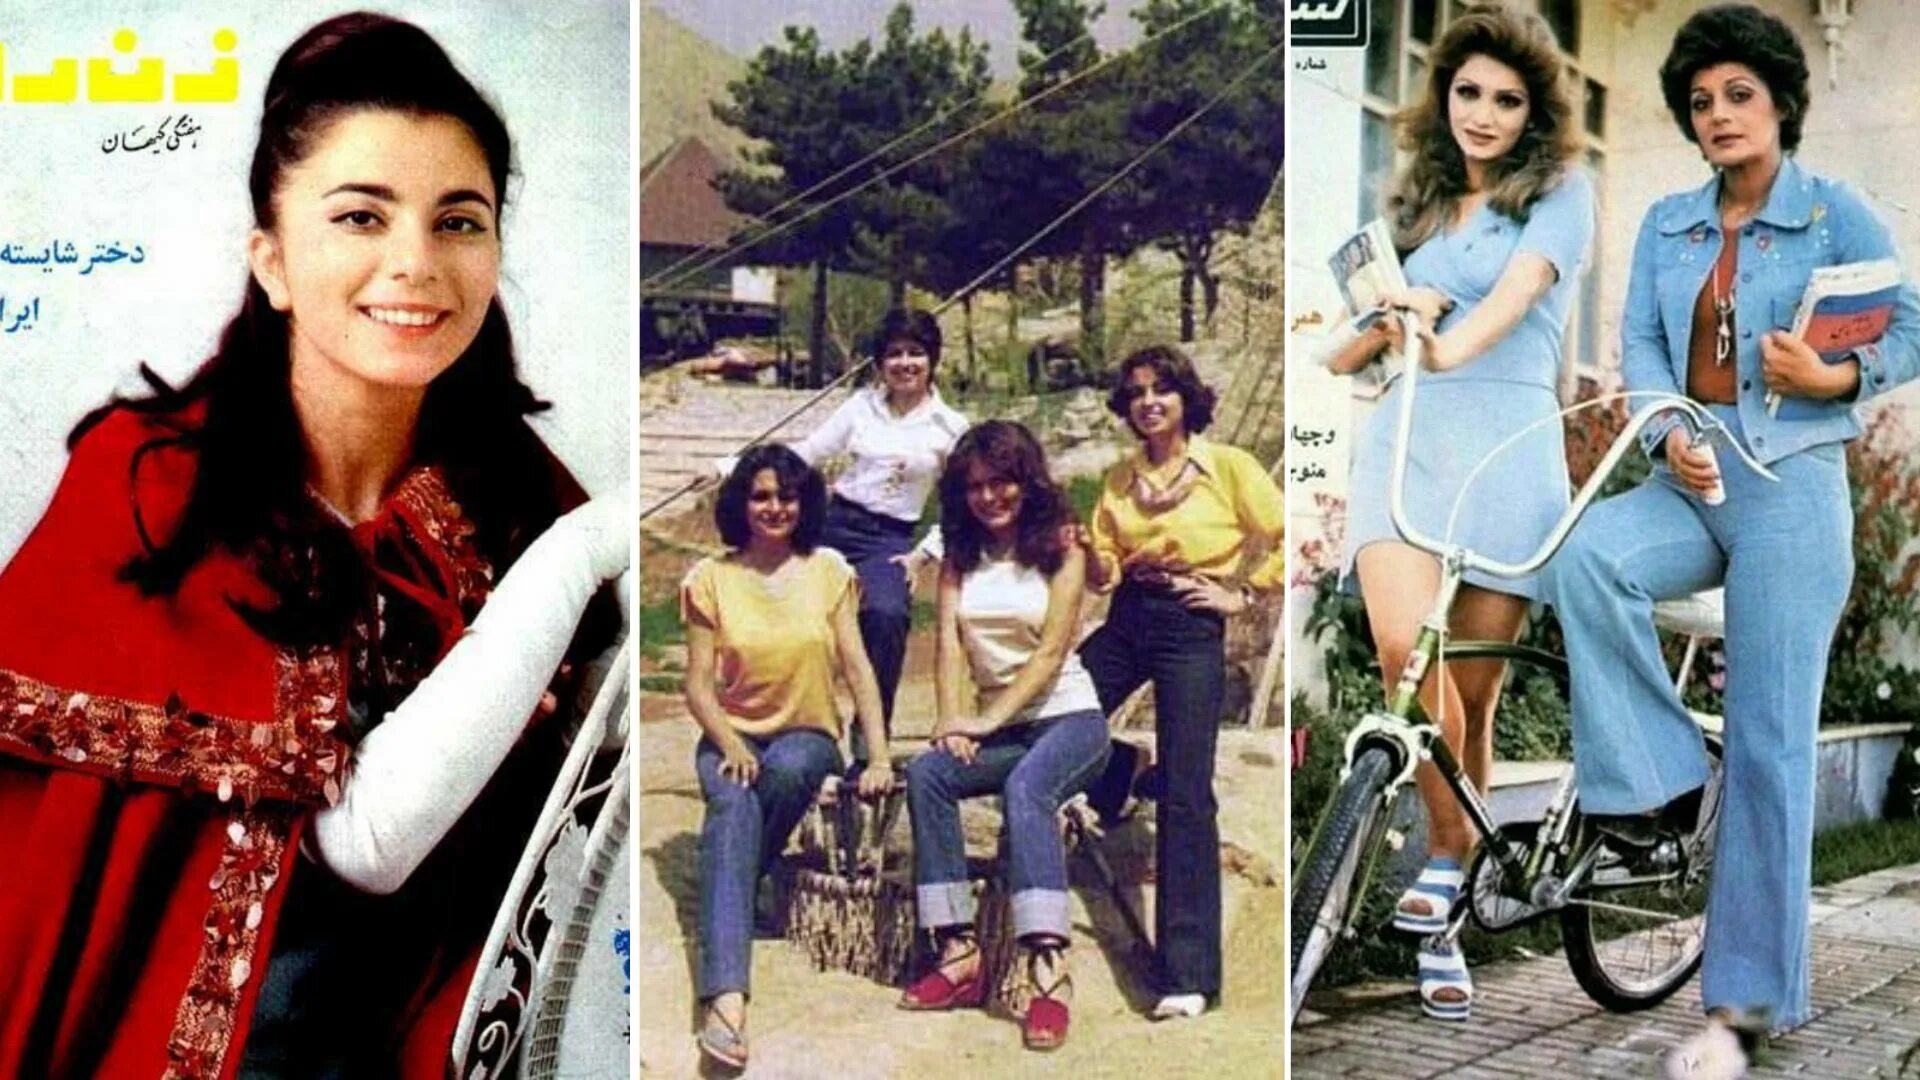 Иран 70 годы. Иран до революции 1979. Иран до исламской революции 1979 года. Иран до и после революции 1979. Иранские девушки до исламской революции 1979 года.